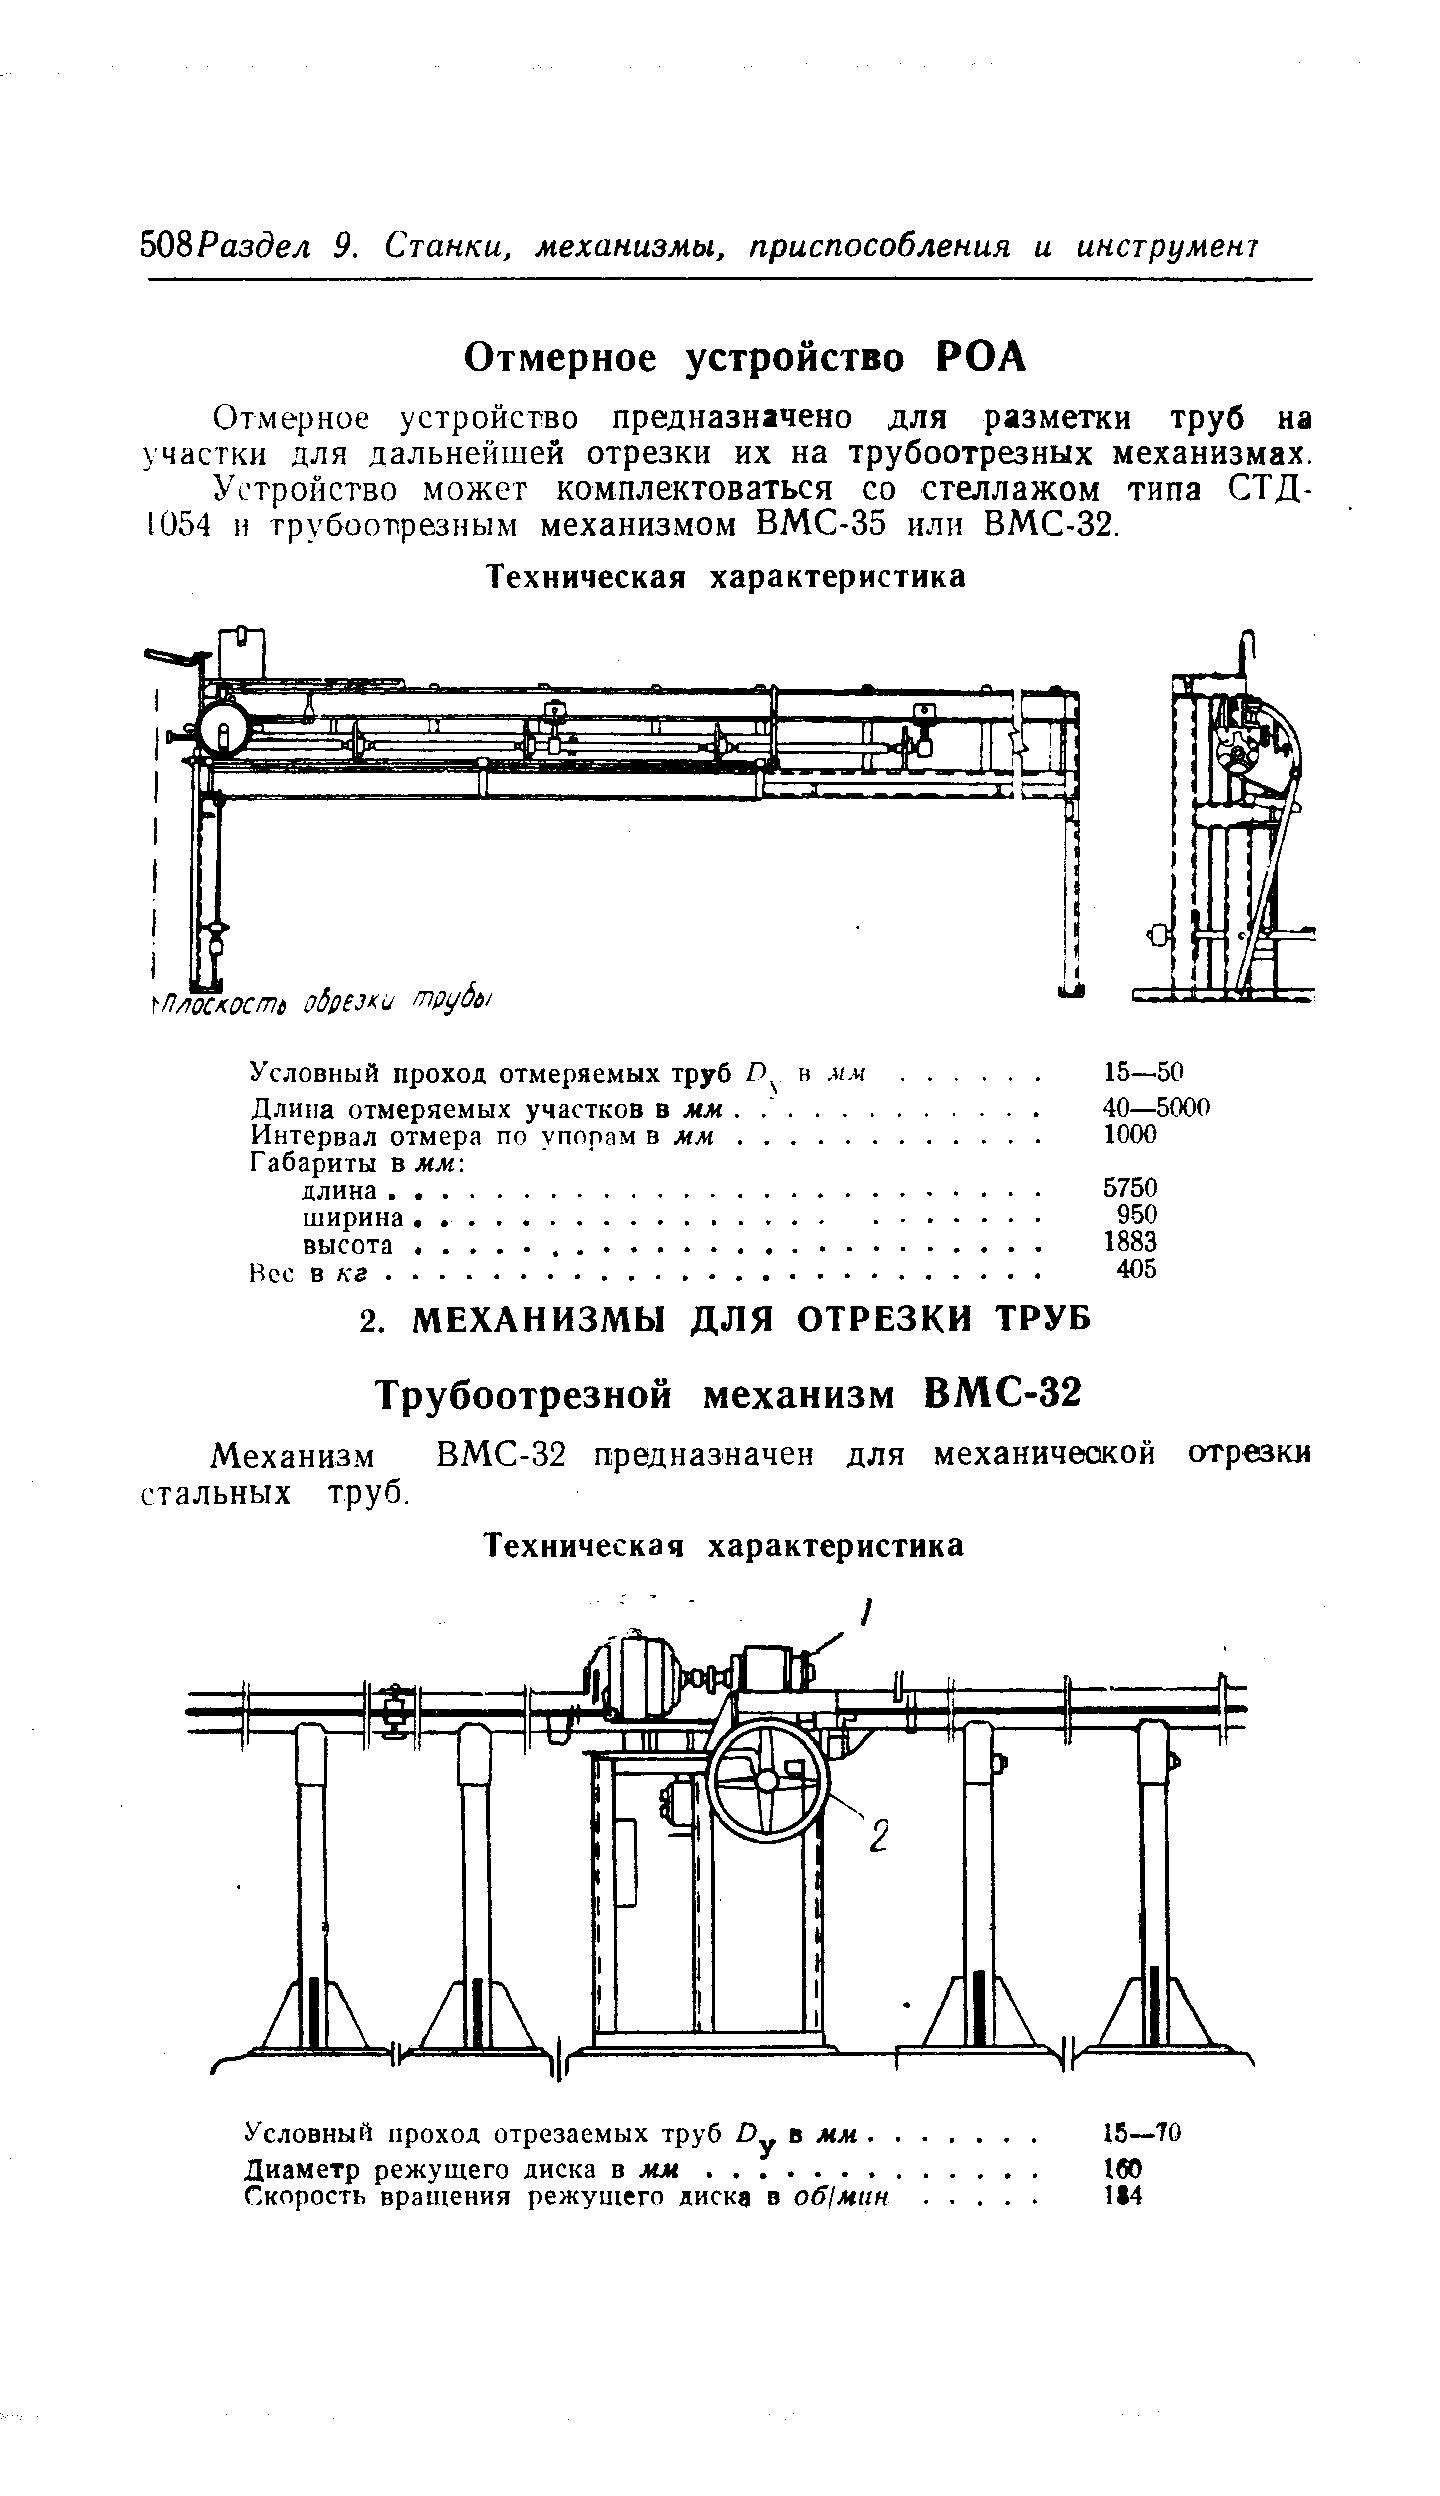 Механизм ВМС-32 предназначен для механической отрезки стальных труб.